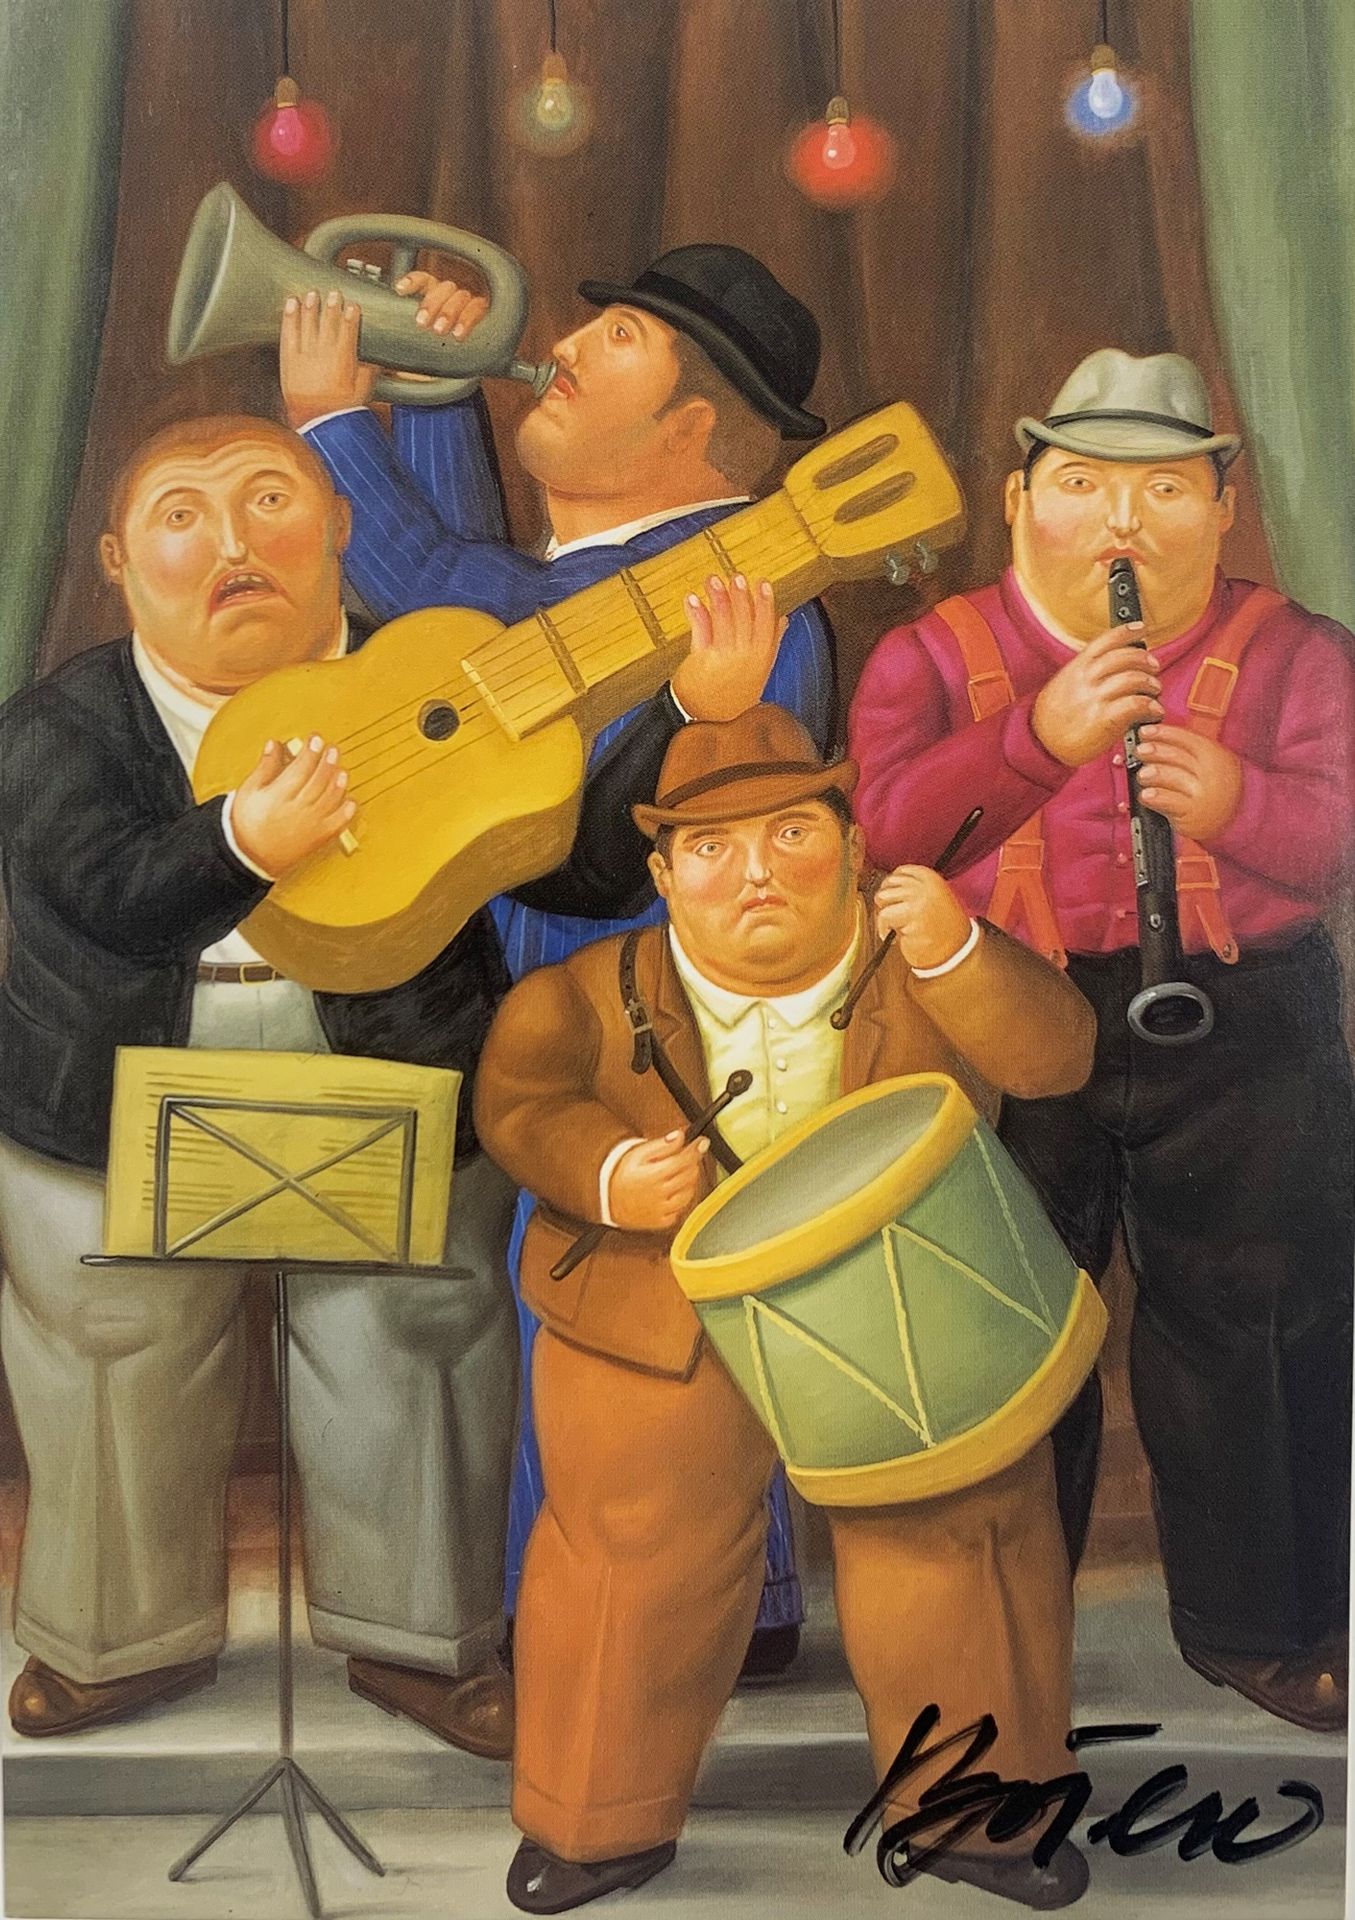 Fernando Botero (né en 1932) MUSICIANS, 2001
明信片
以黑色毡笔签名
15 x 12 cm